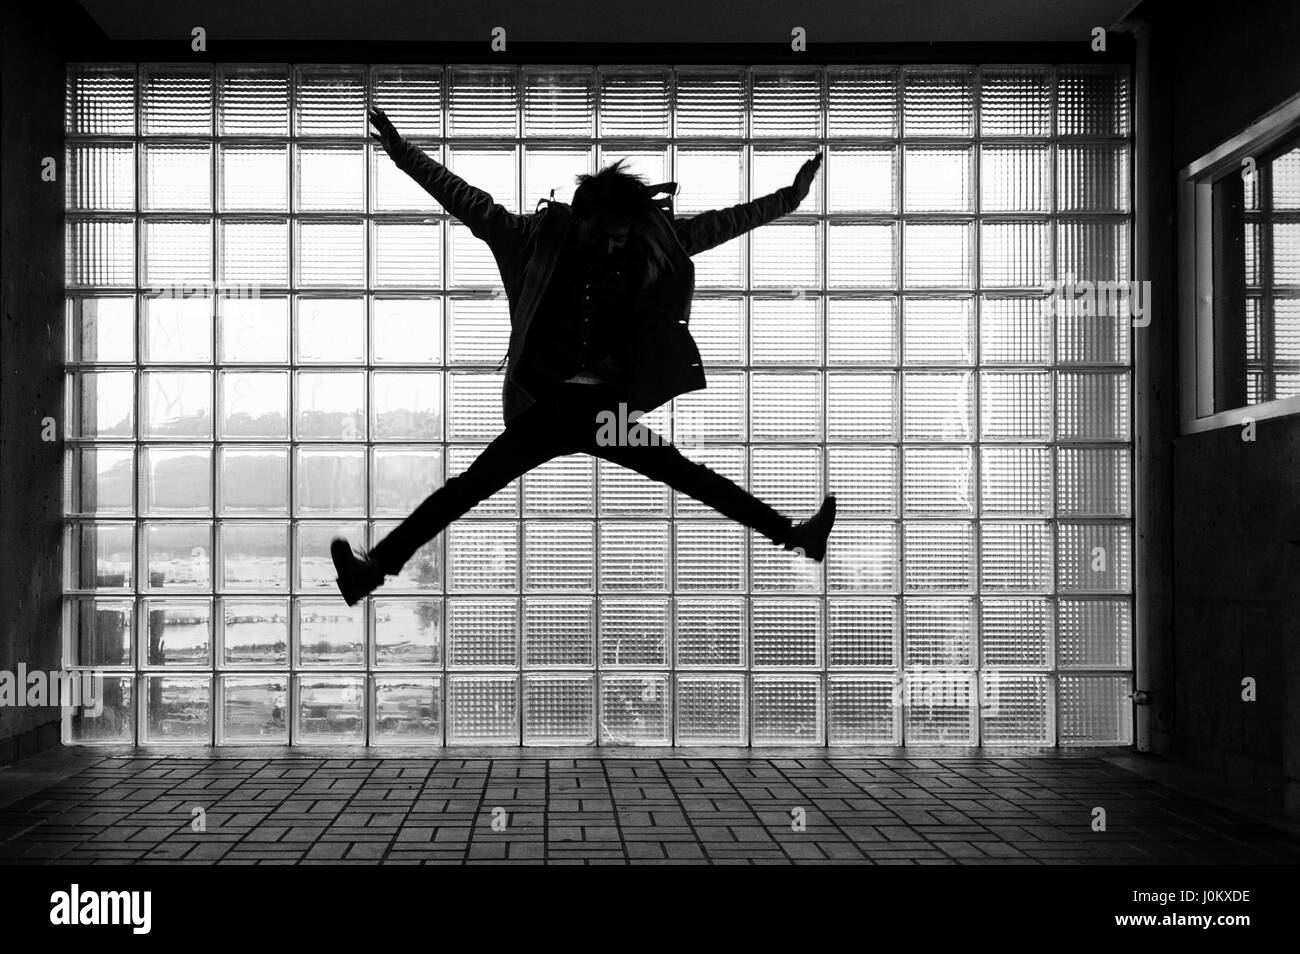 Un uomo sihouetted jumping in da del mattone di vetro, con riflessioni e movimento. Foto Stock